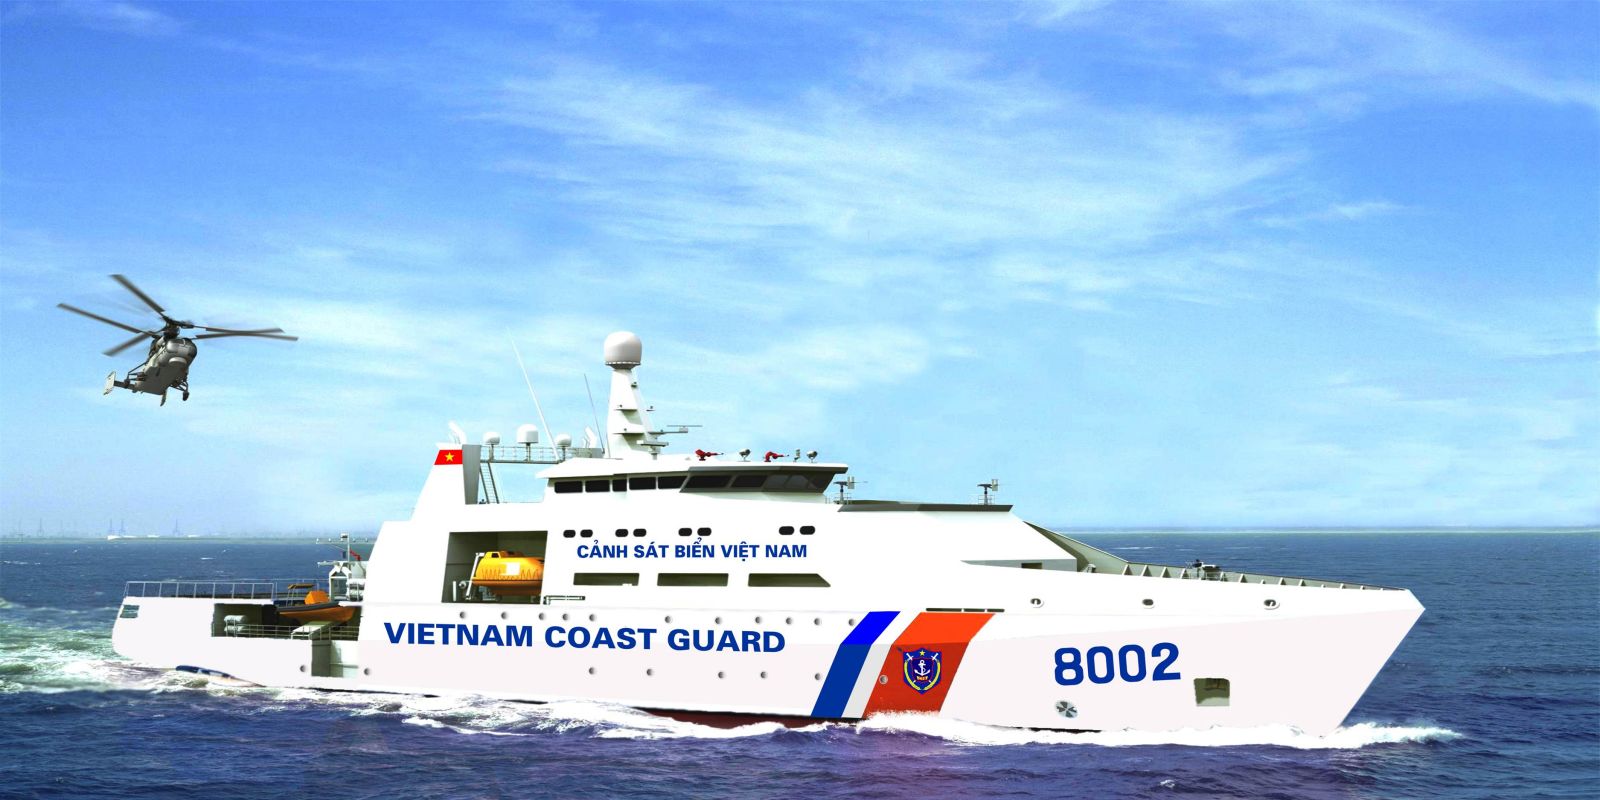 Quy định mới về màu sắc của tàu thuyền, xuồng Cảnh sát biển Việt Nam